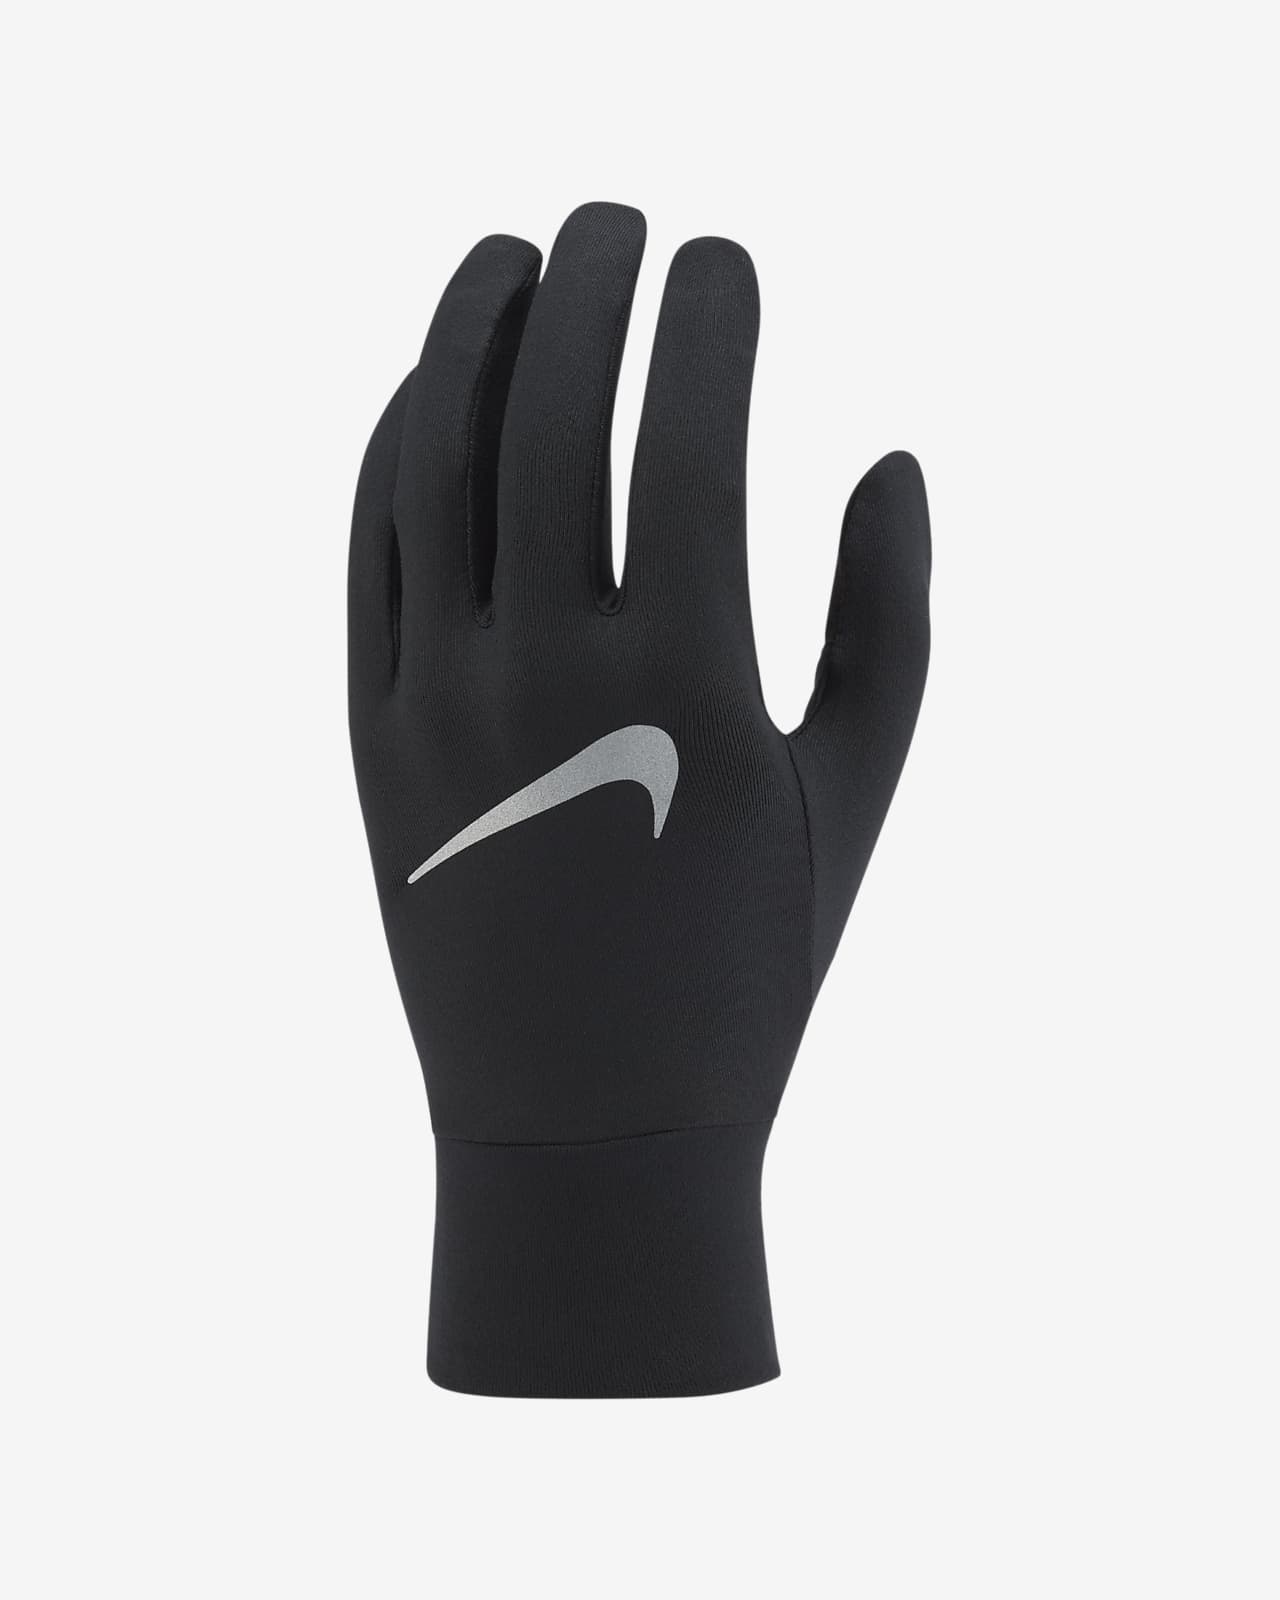 Nike Accelerate Men's Running Gloves